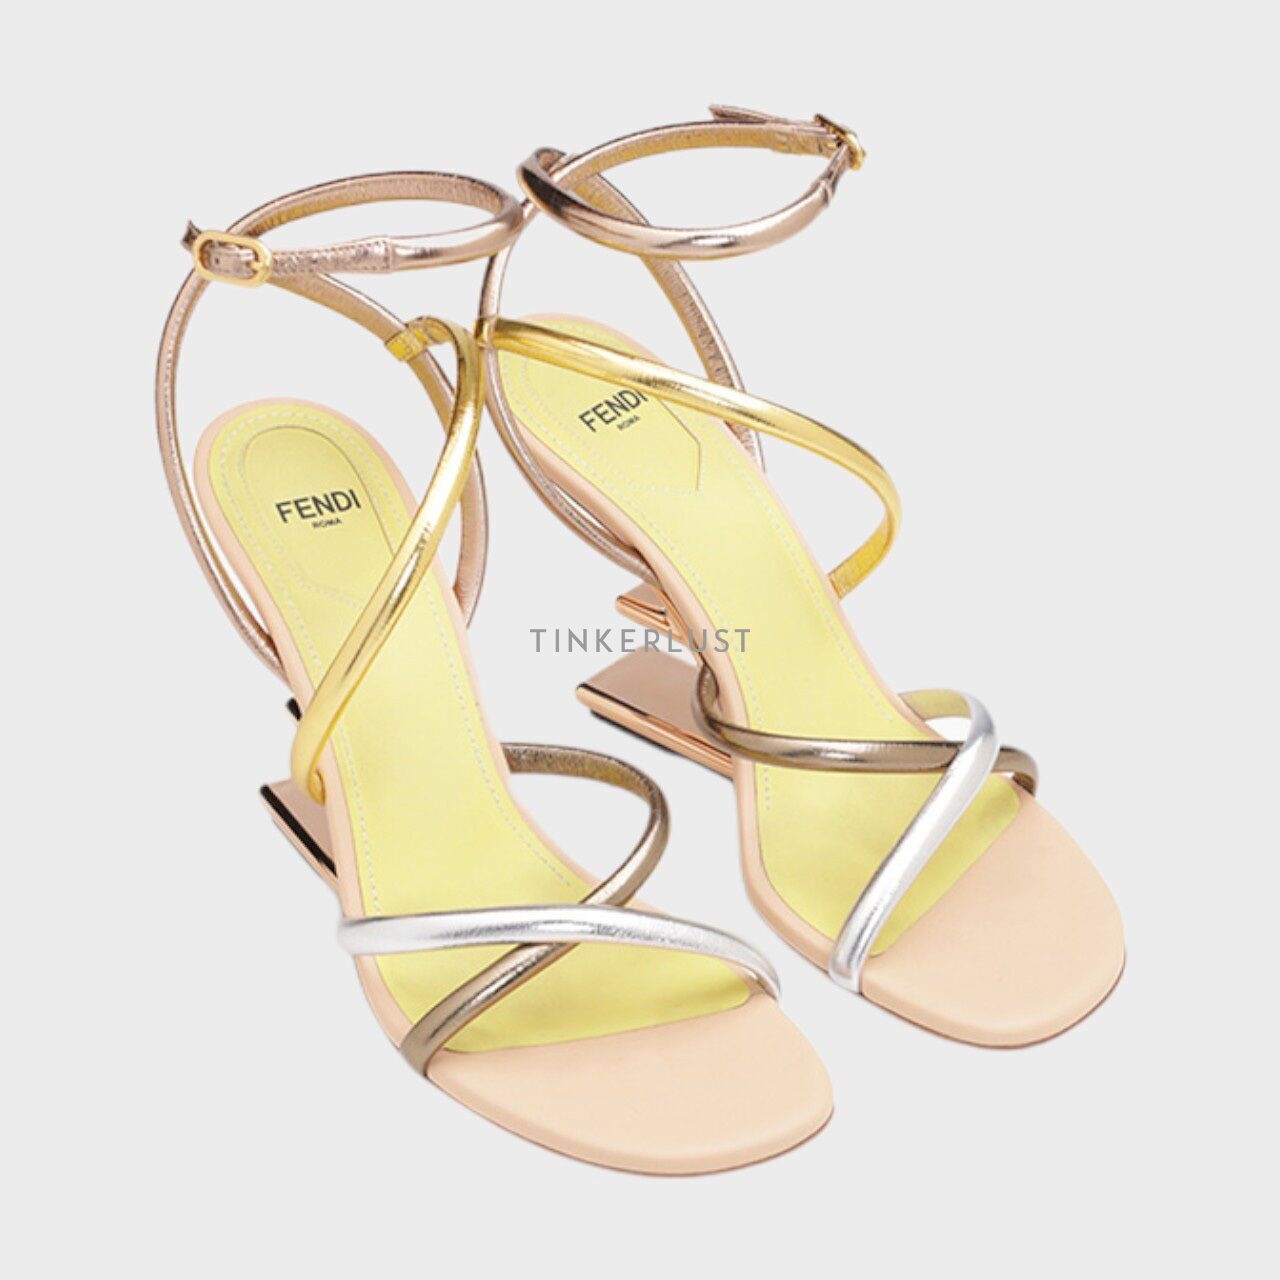 Fendi Women First Open Toe Strappy 90mm in Gold Multicolor Heels